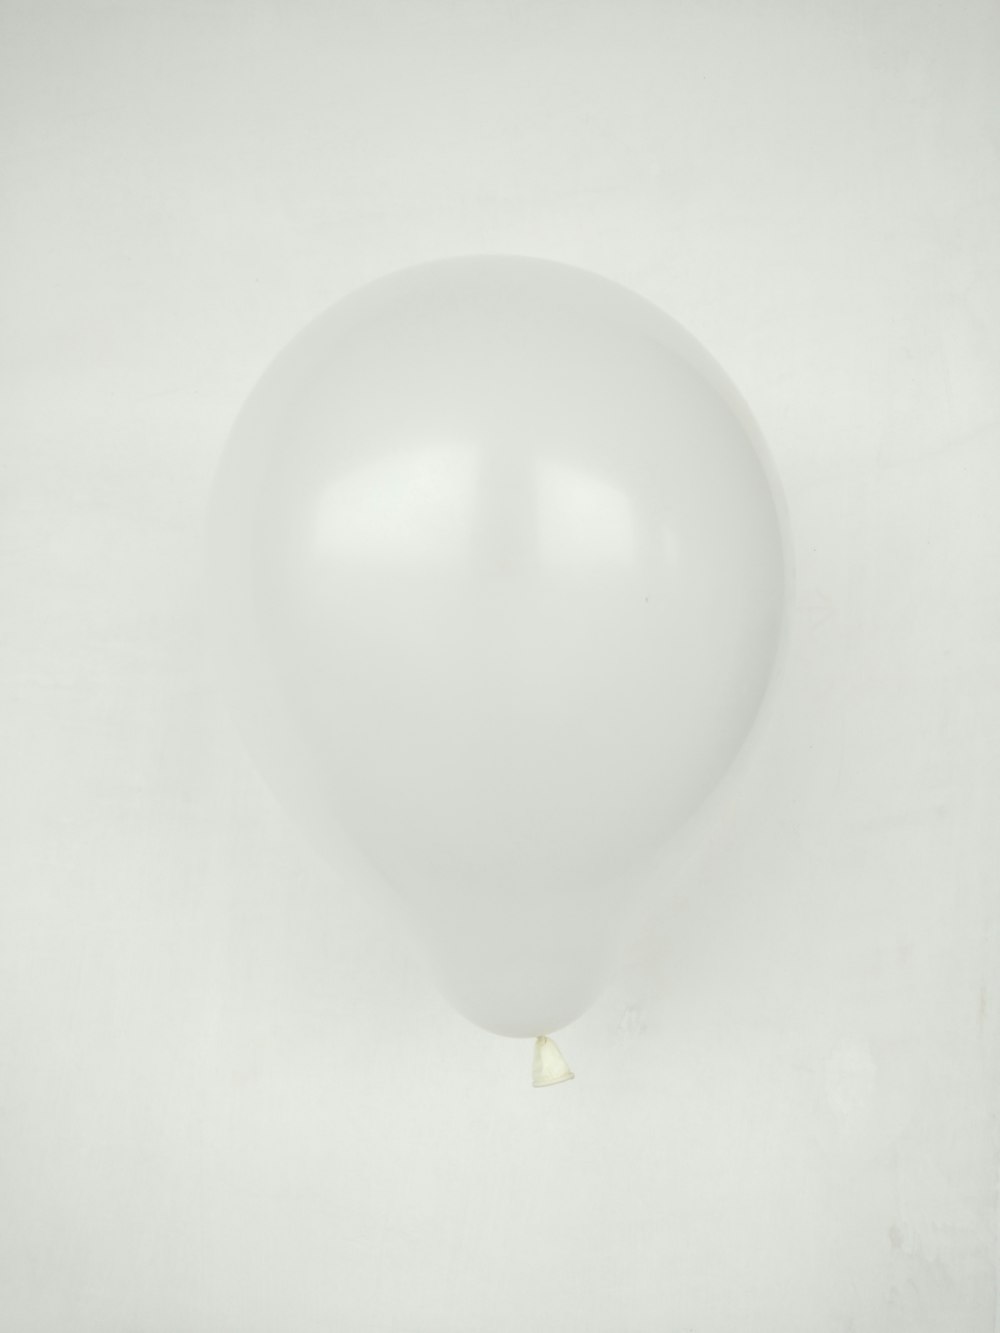 balão branco na superfície branca